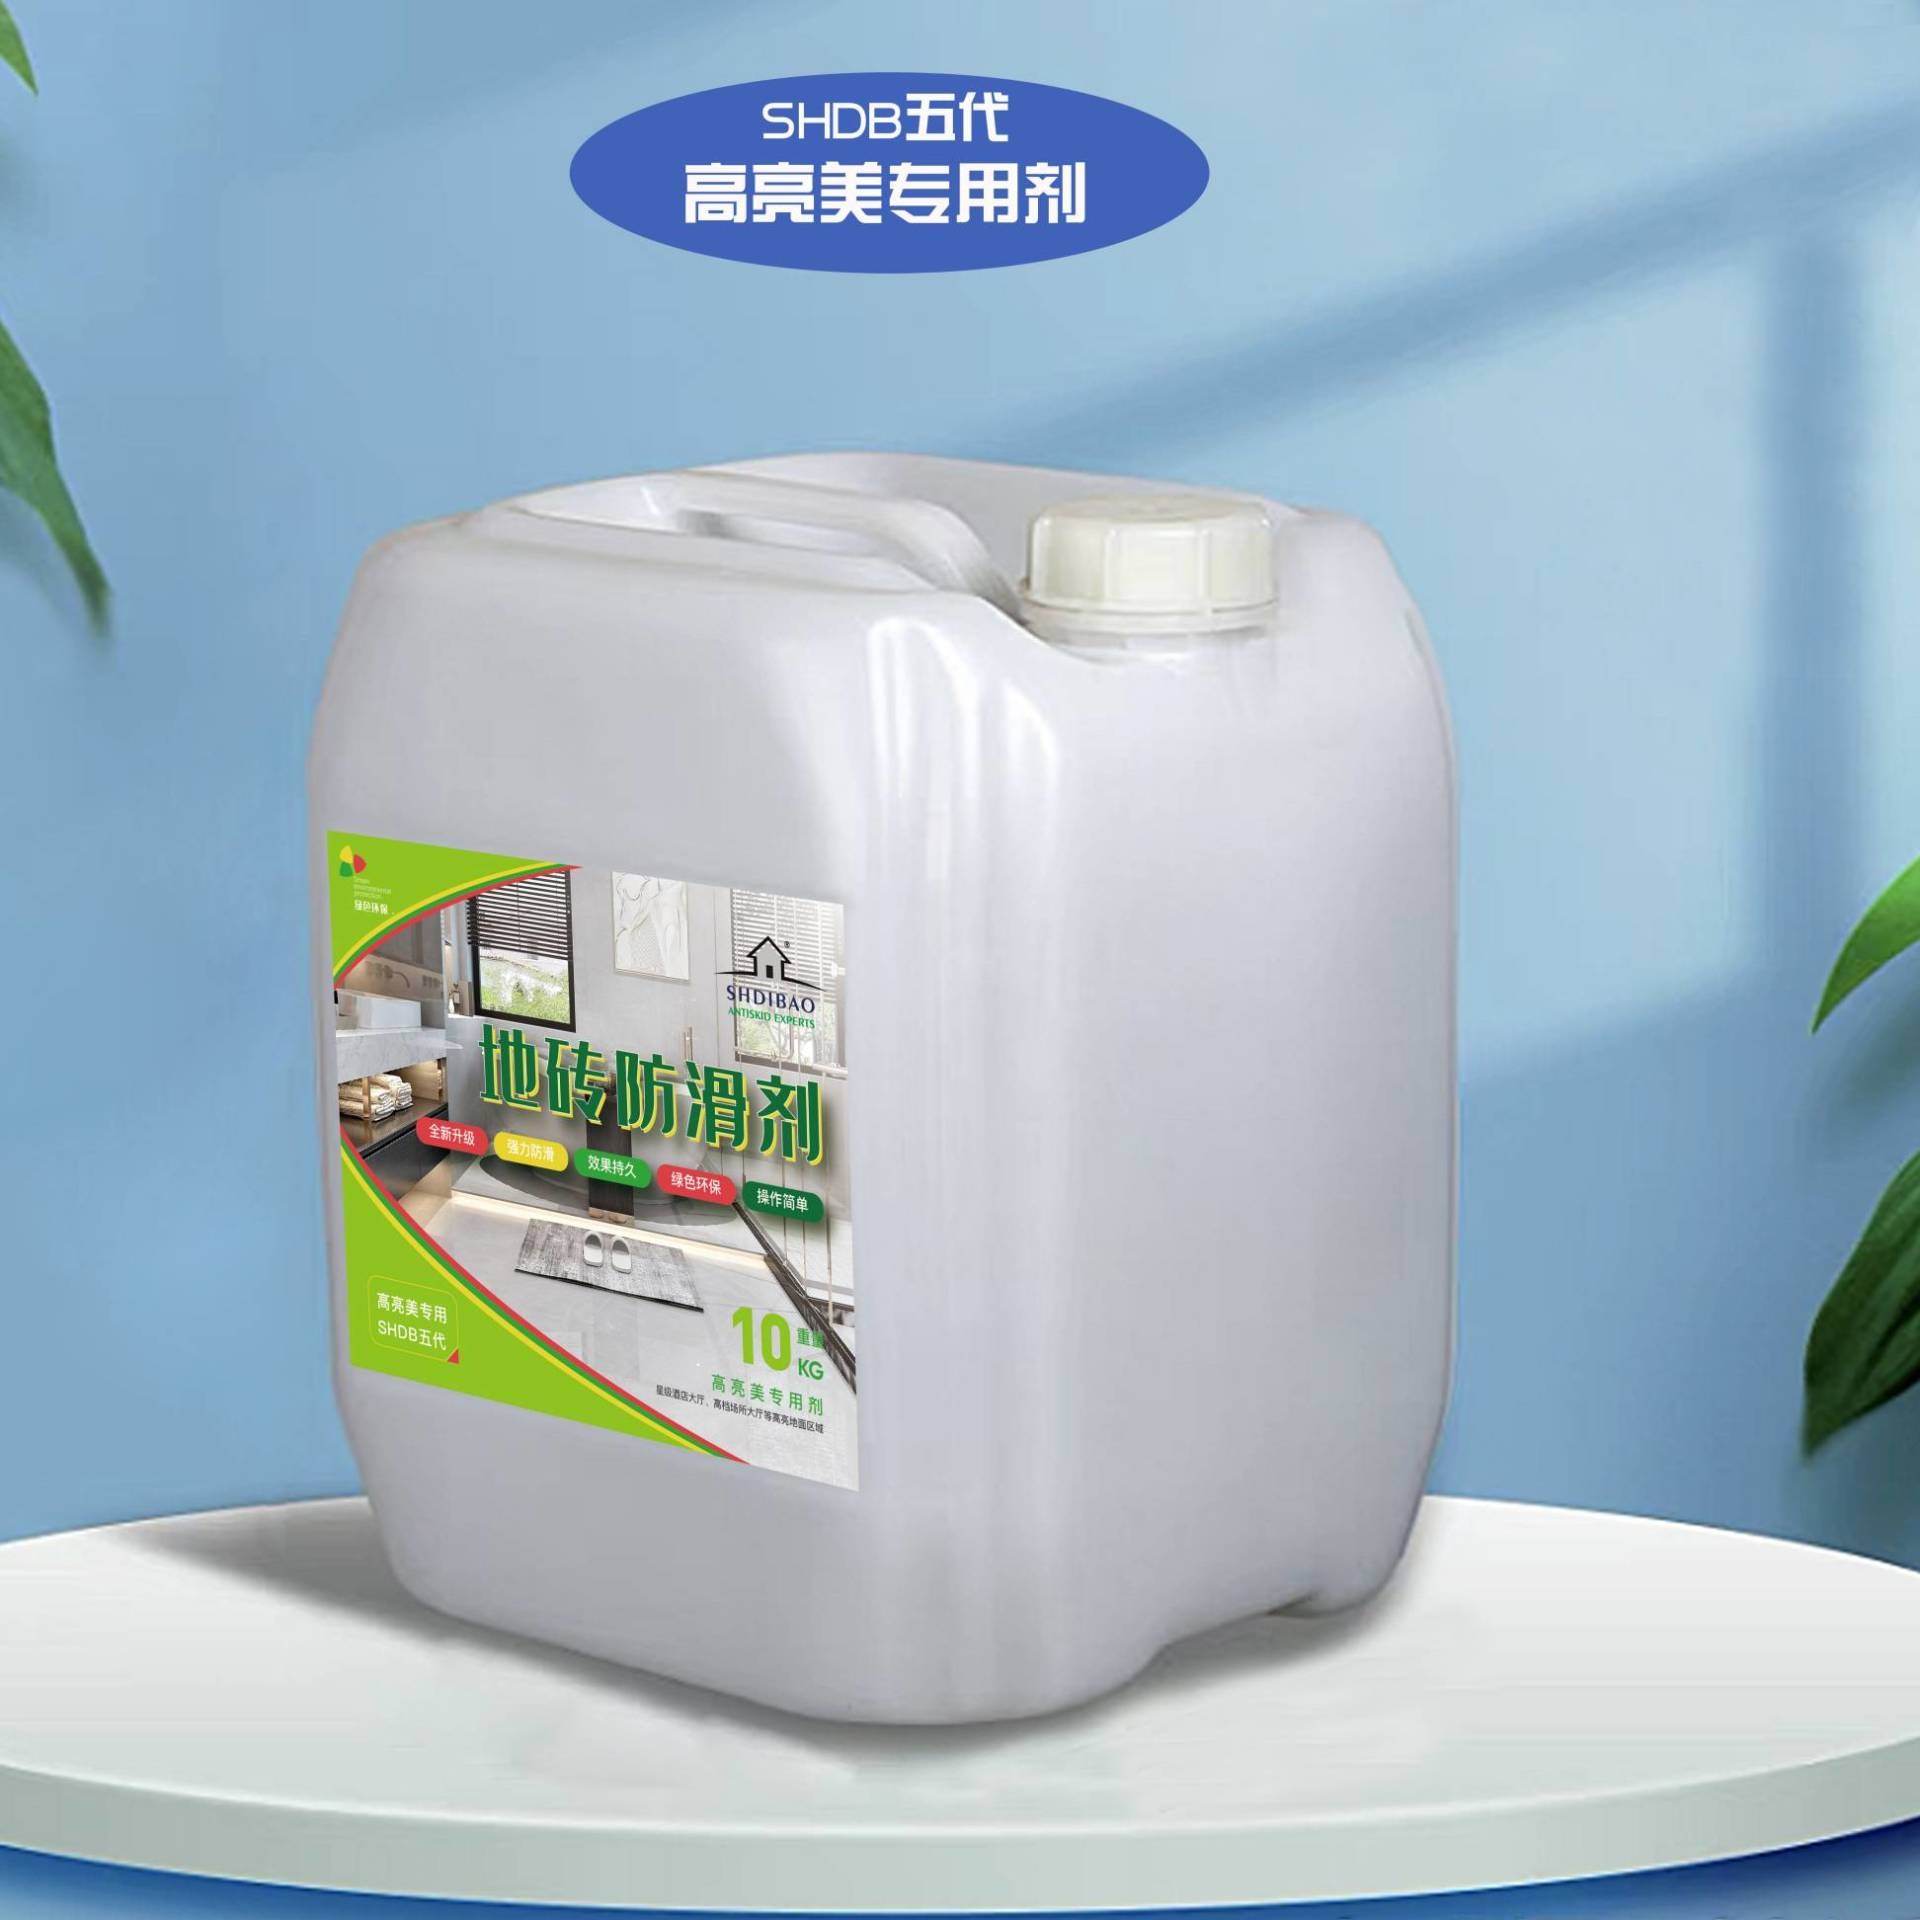 地面防滑剂 地宝五代高亮美防滑剂SHDIBAO-20 上海地宝厂商价格 防滑液厂家图片